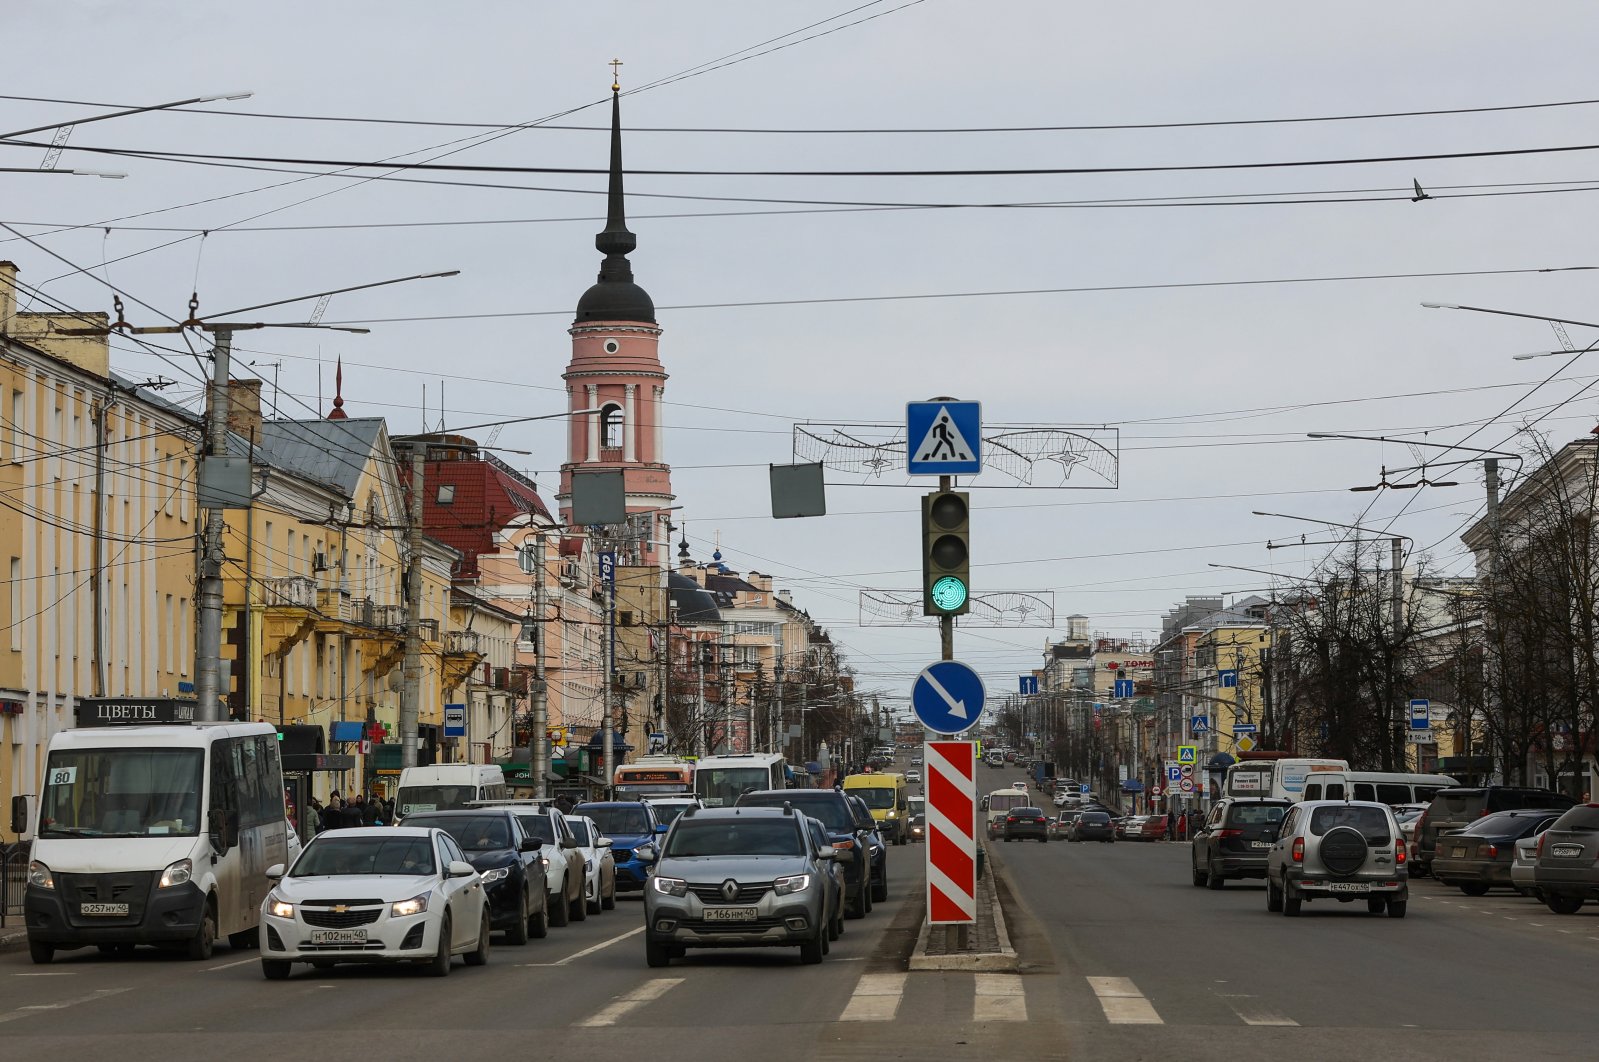 Penjualan mobil turun saat Barat memukul Rusia dengan sanksi